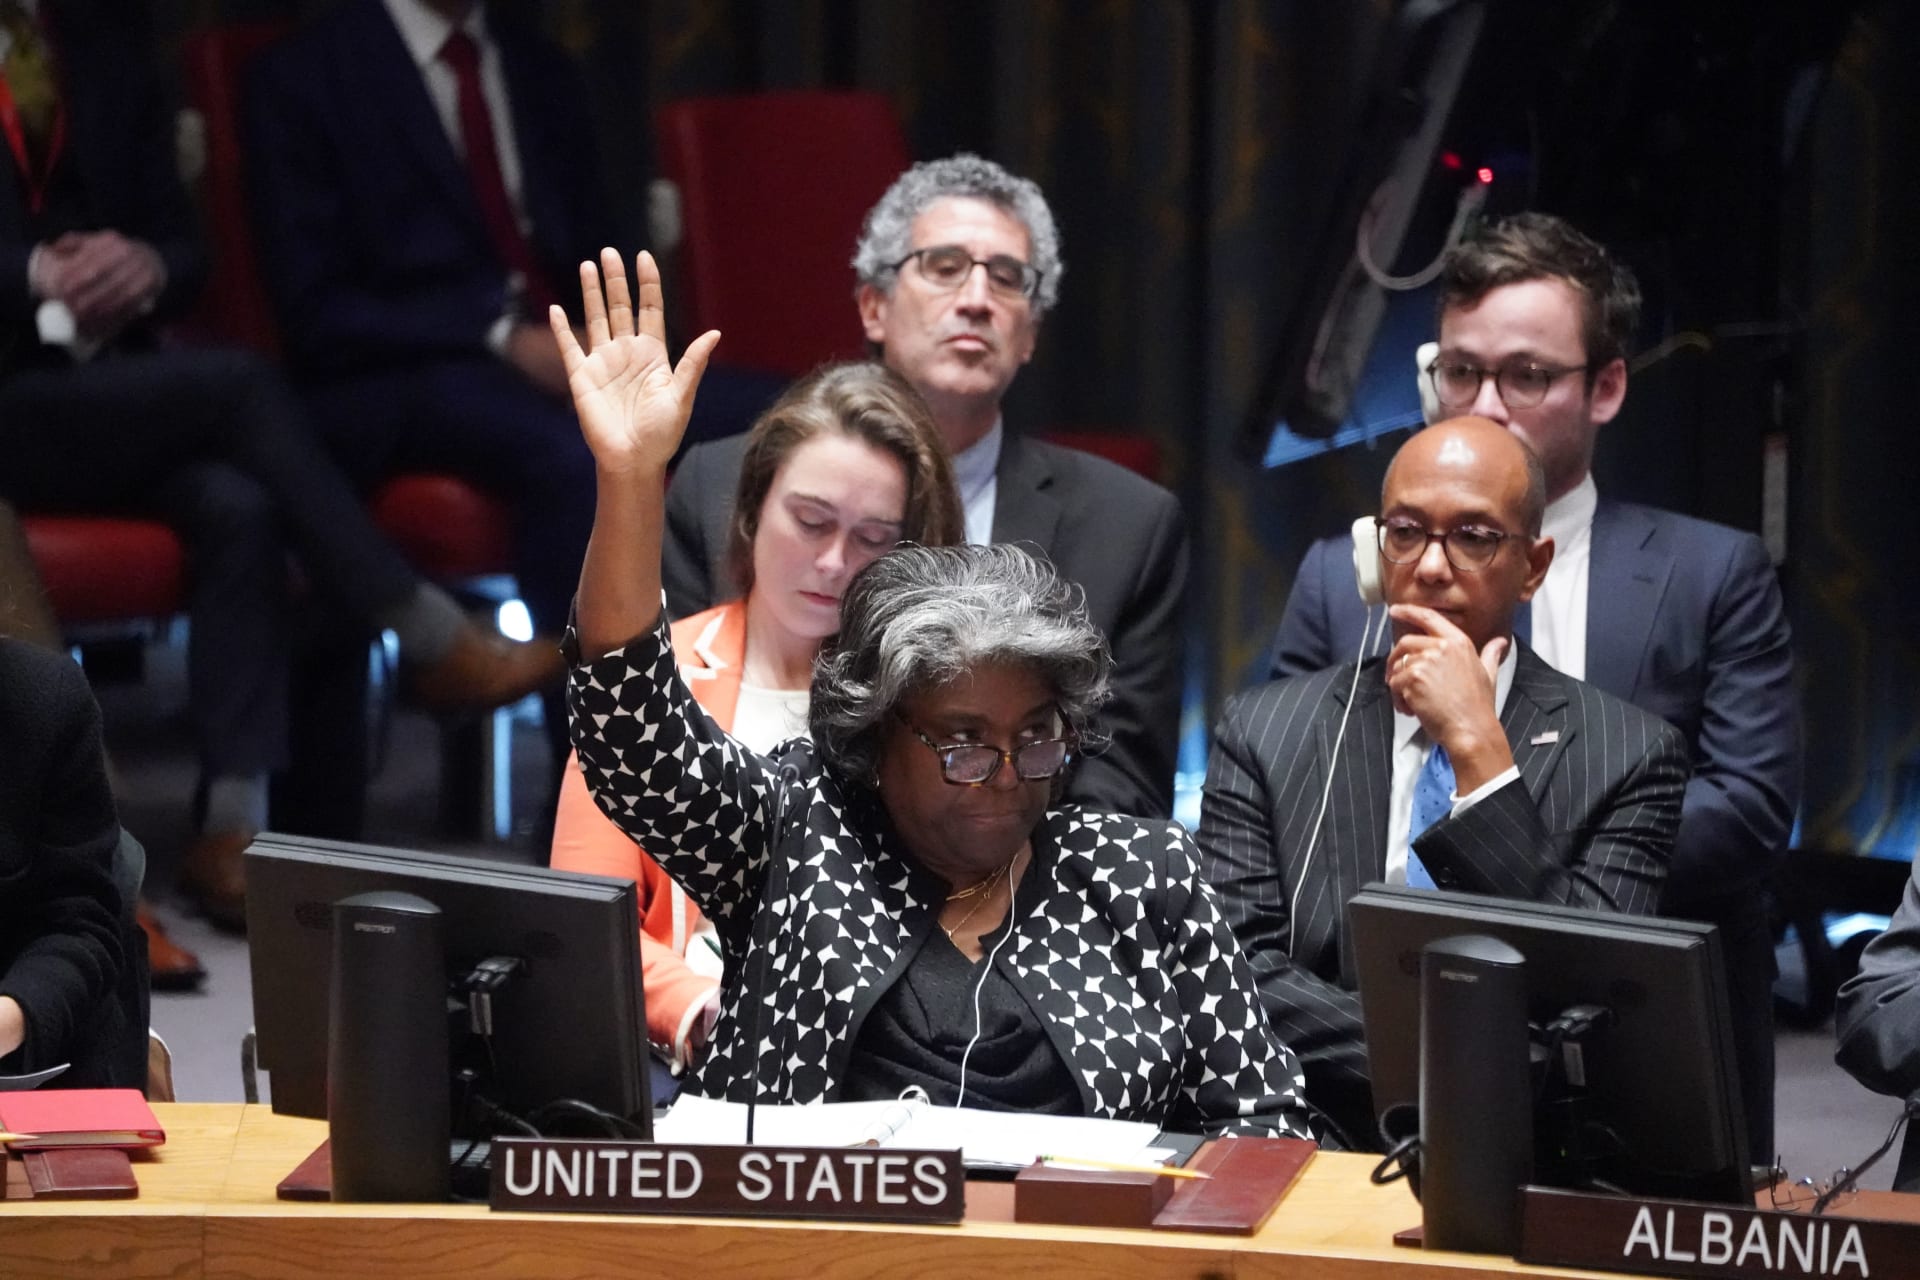 سفيرة الولايات المتحدة لدى الأمم المتحدة ليندا توماس غرينفيلد تصوت على قرار بشأن الوضع في إسرائيل وغزة في جلسة لمجلس الأمن حول الوضع في الشرق الأوسط، في 18 أكتوبر/ تشرين الأول 2023.